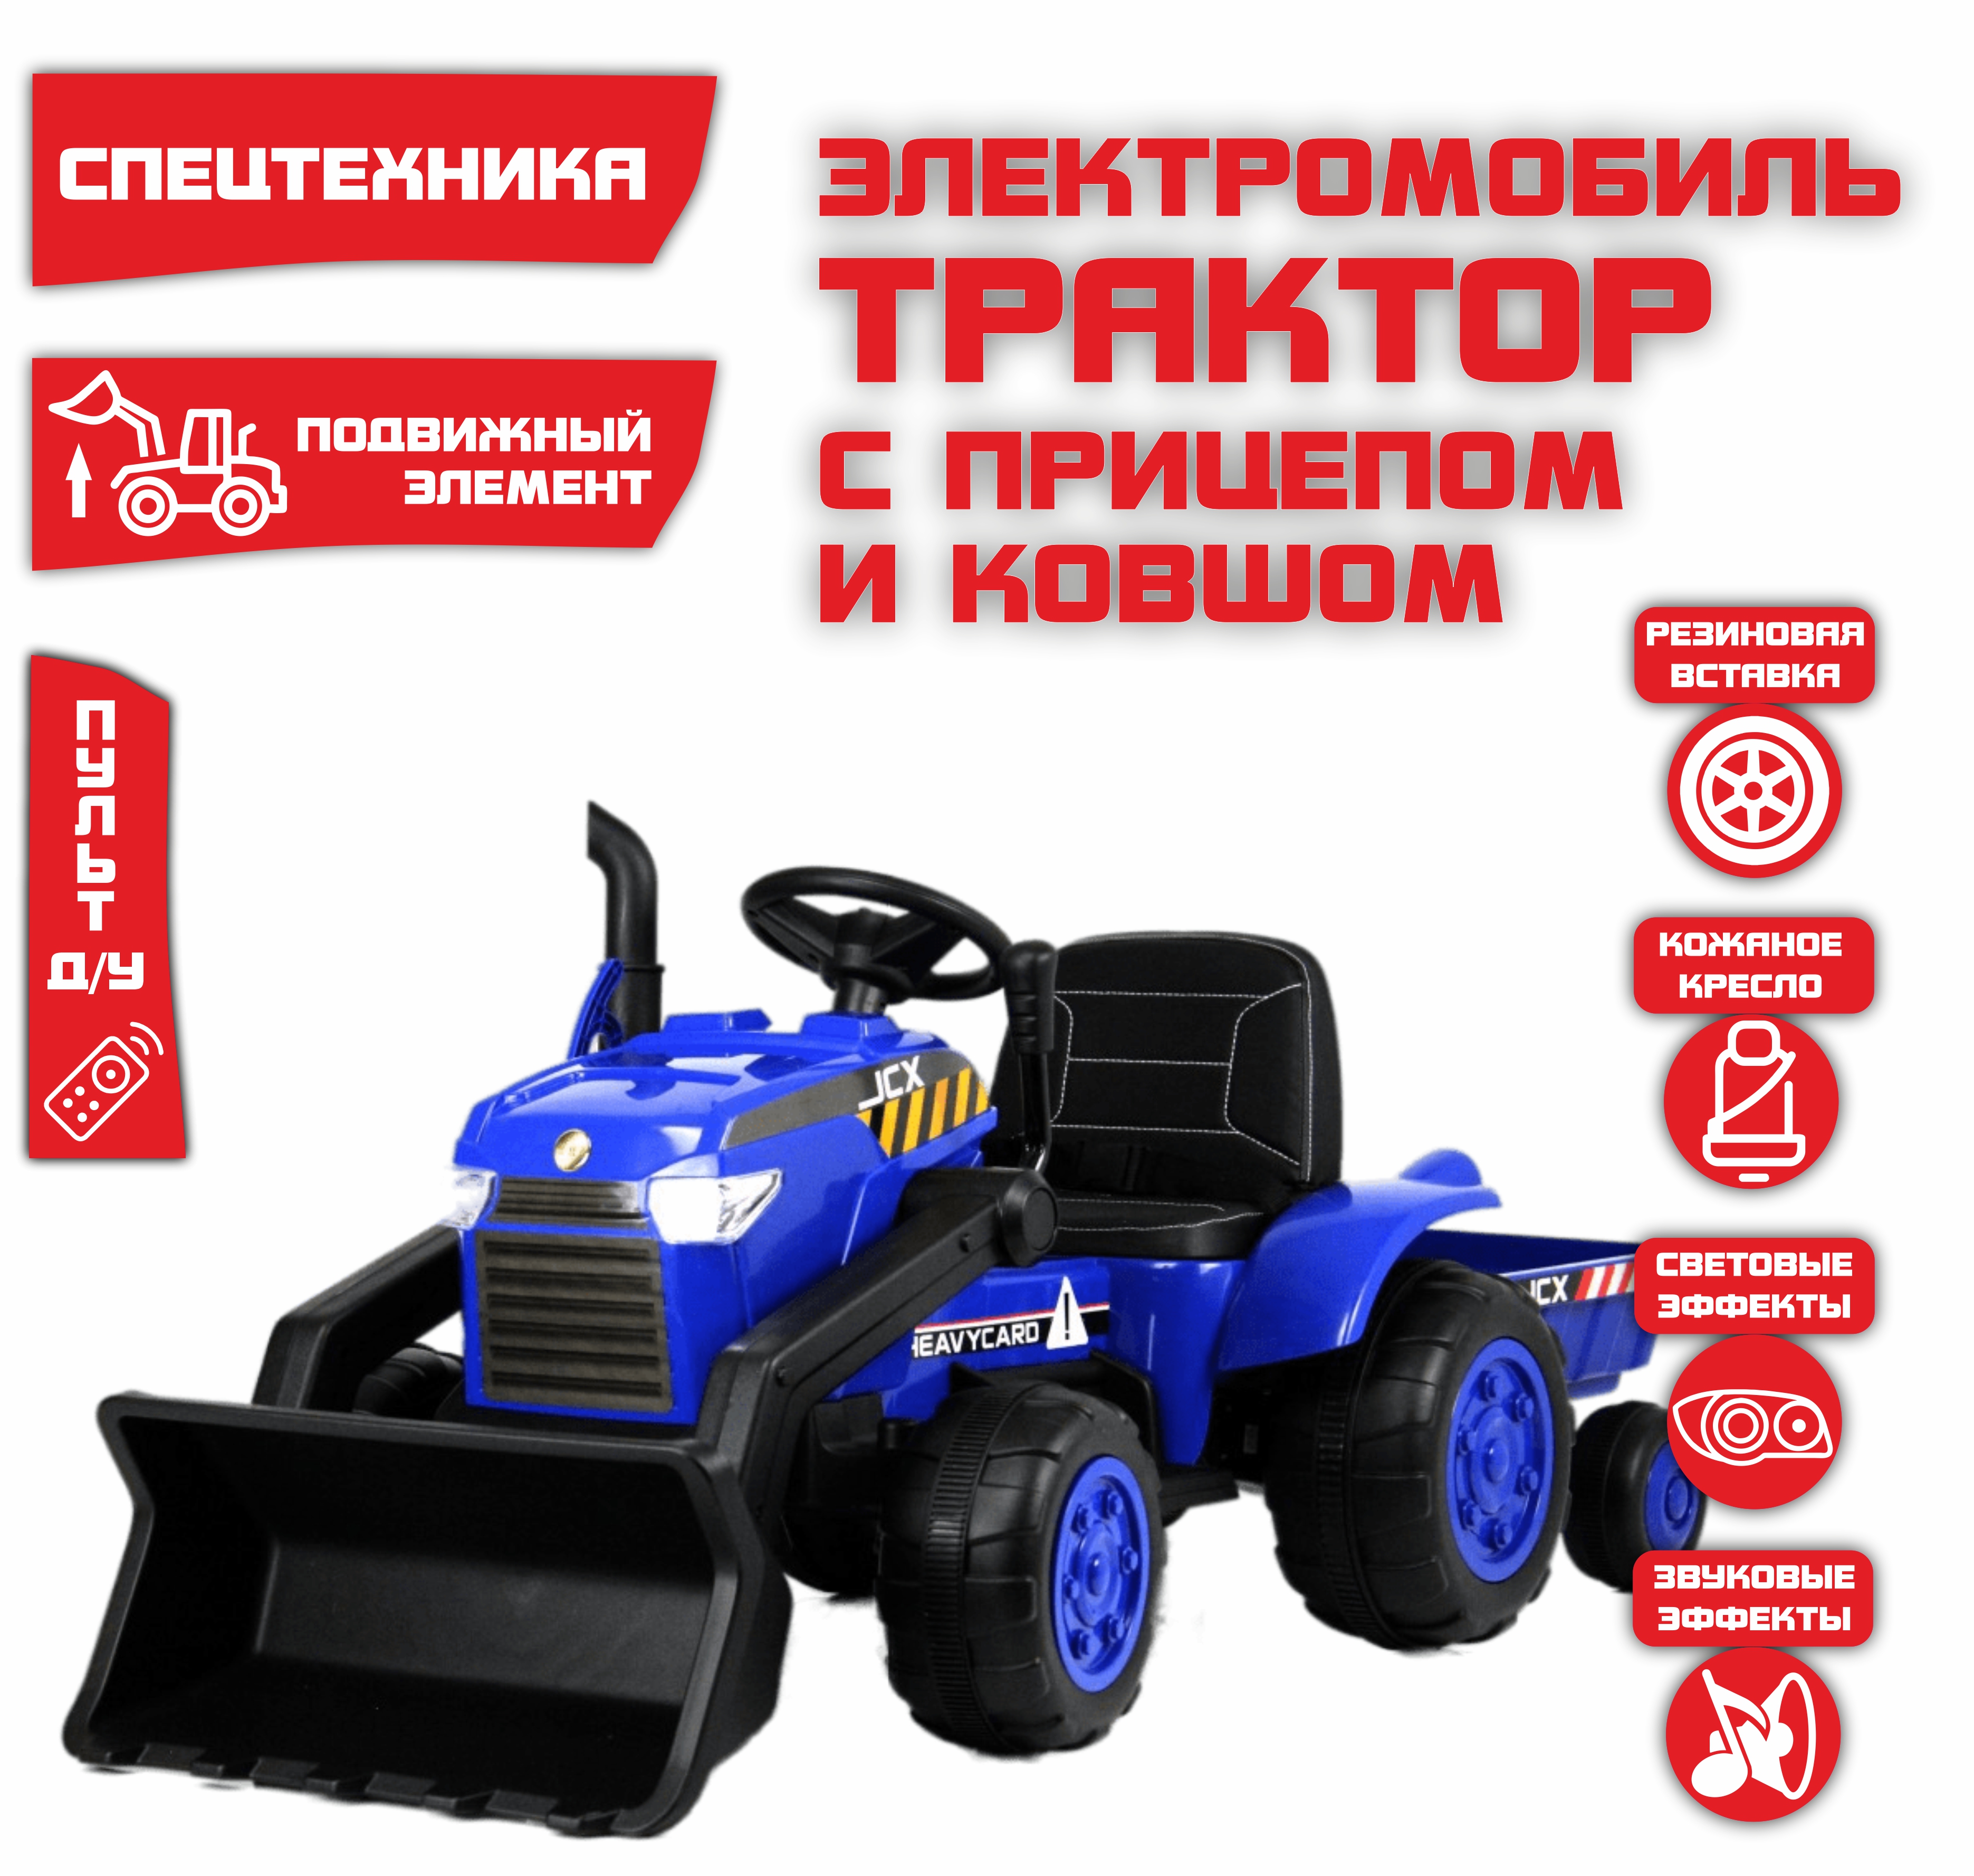 Электромобиль детский NOVAKIDS трактор с прицепом S617 Синий + Пульт синий электромобиль трактор с прицепом novakids jcb синий пульт